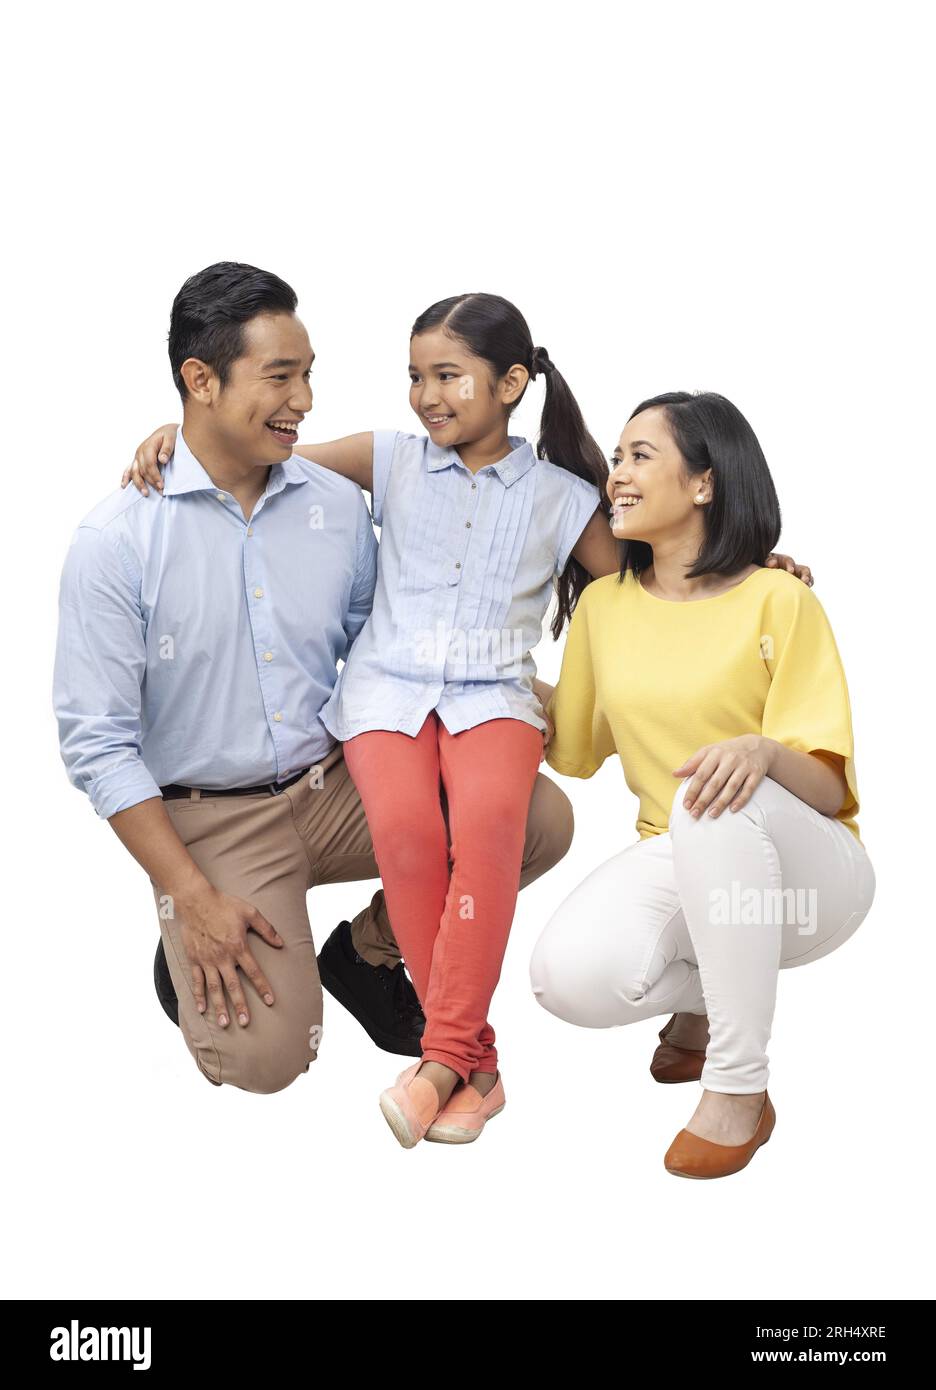 Junge und fröhliche asiatische Familie, die sich anlächelt und sich im Studio posiert, isoliert auf weißem Hintergrund Stockfoto